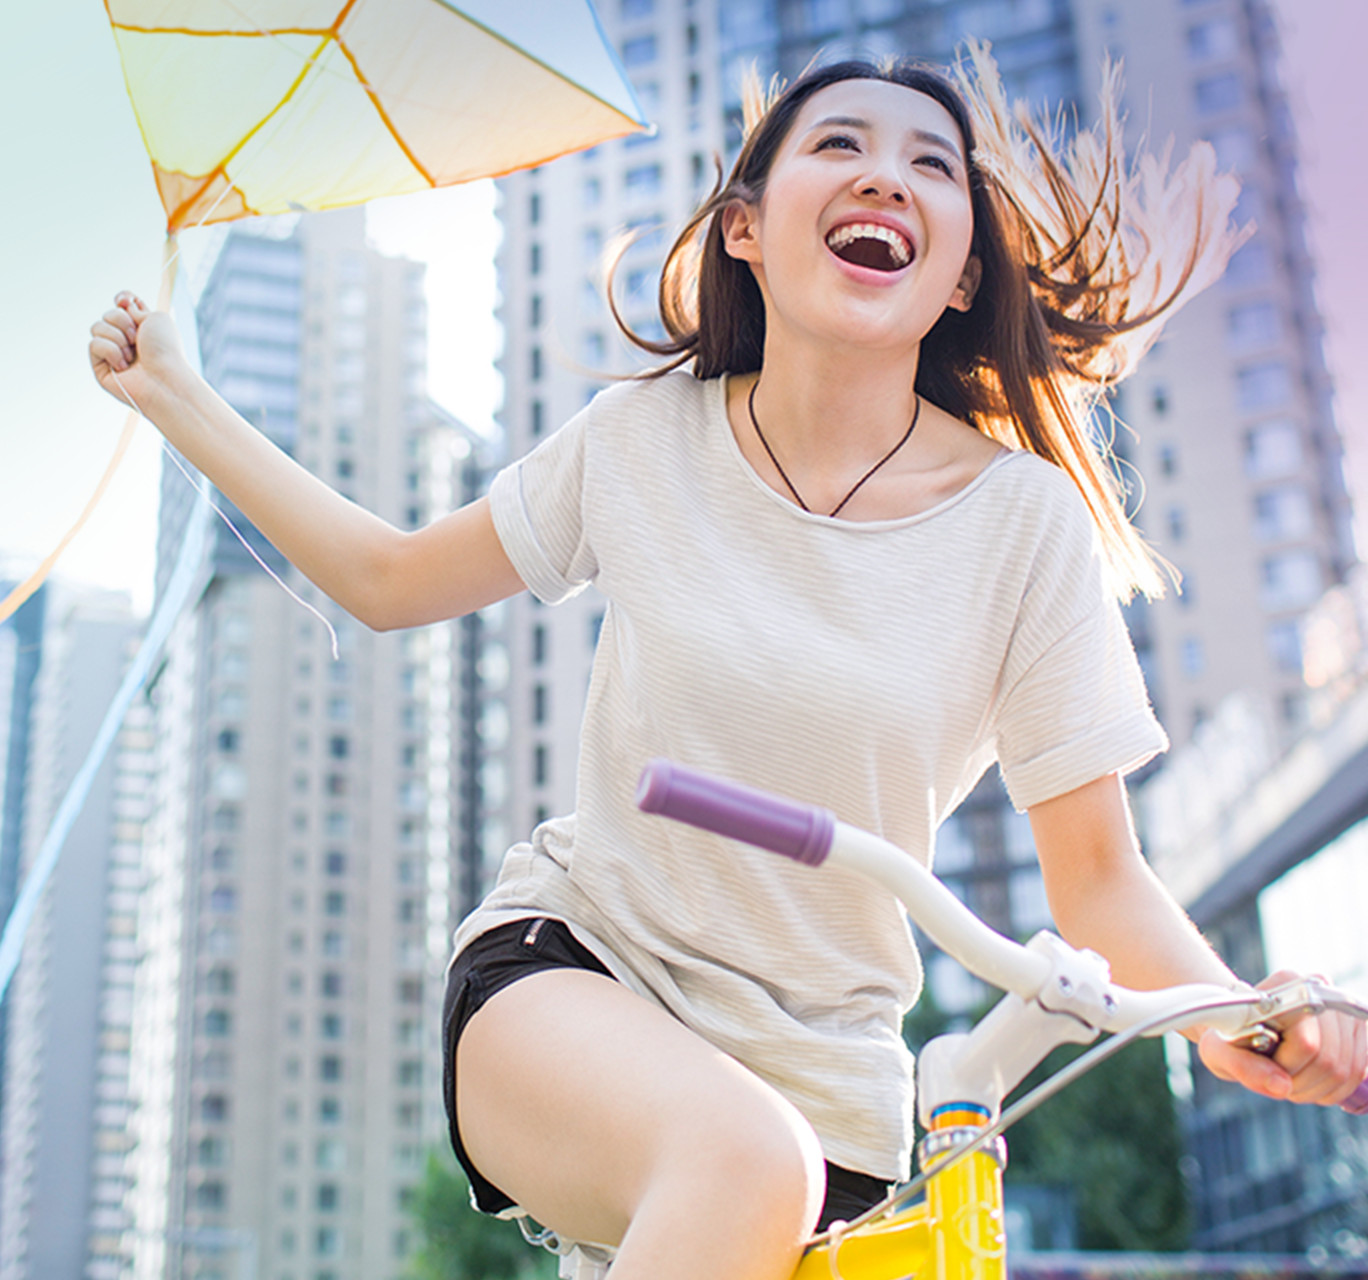 Jeune femme qui fait du vélo dans une grande ville en tenant un cerf-volant.